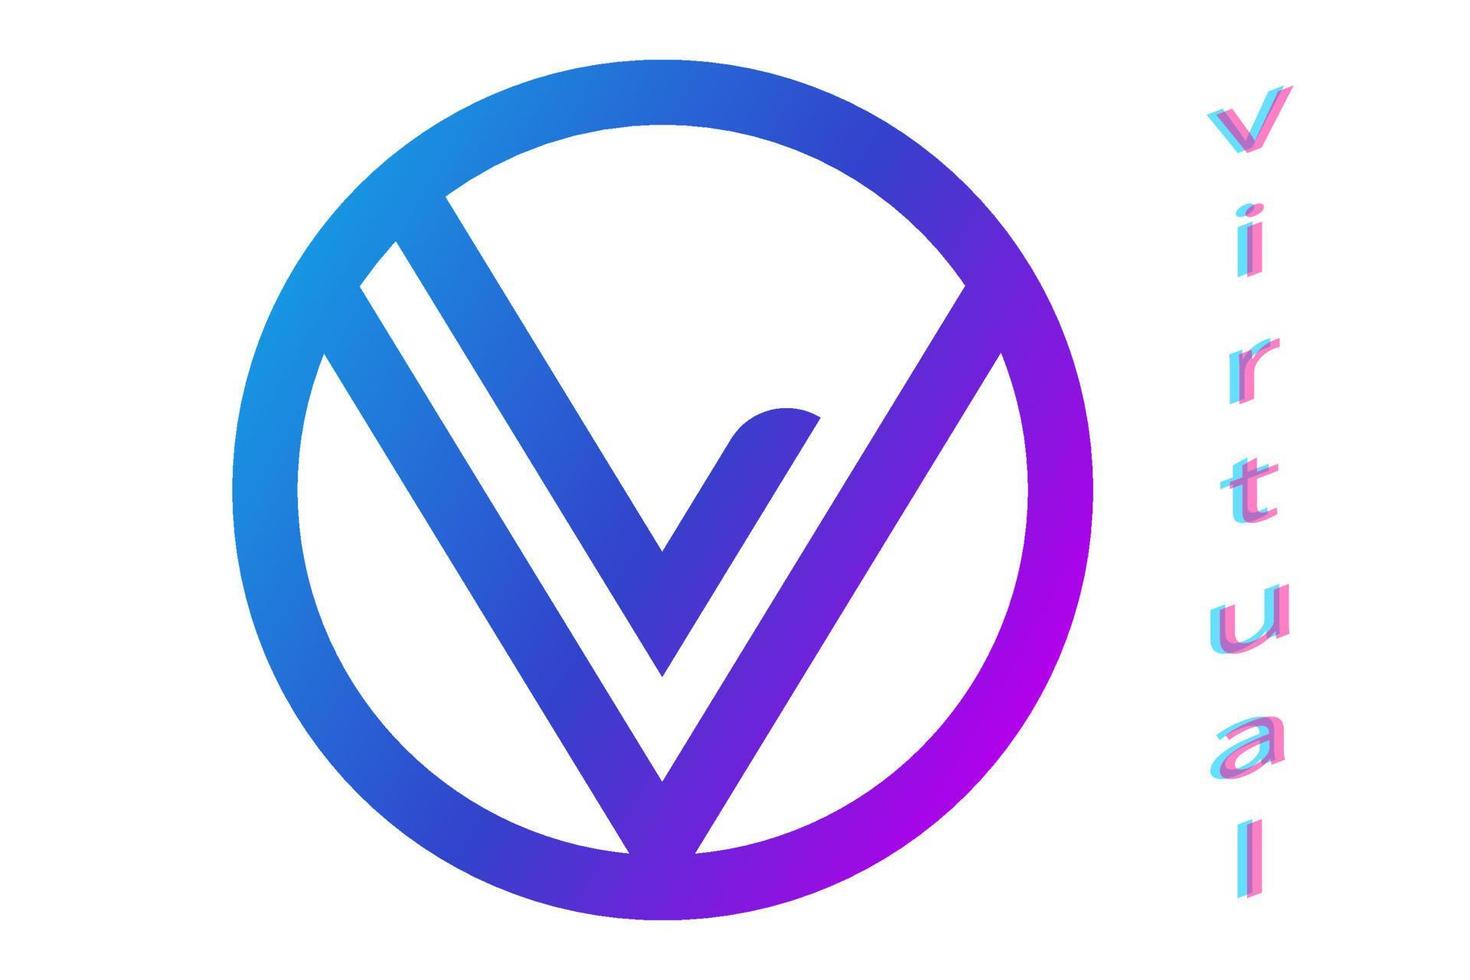 virtueel logo vector teken. hoofdletters v en l in cirkel. eenvoudig logo bord met blauwe en paarse gradiënt geïsoleerd op een witte achtergrond.